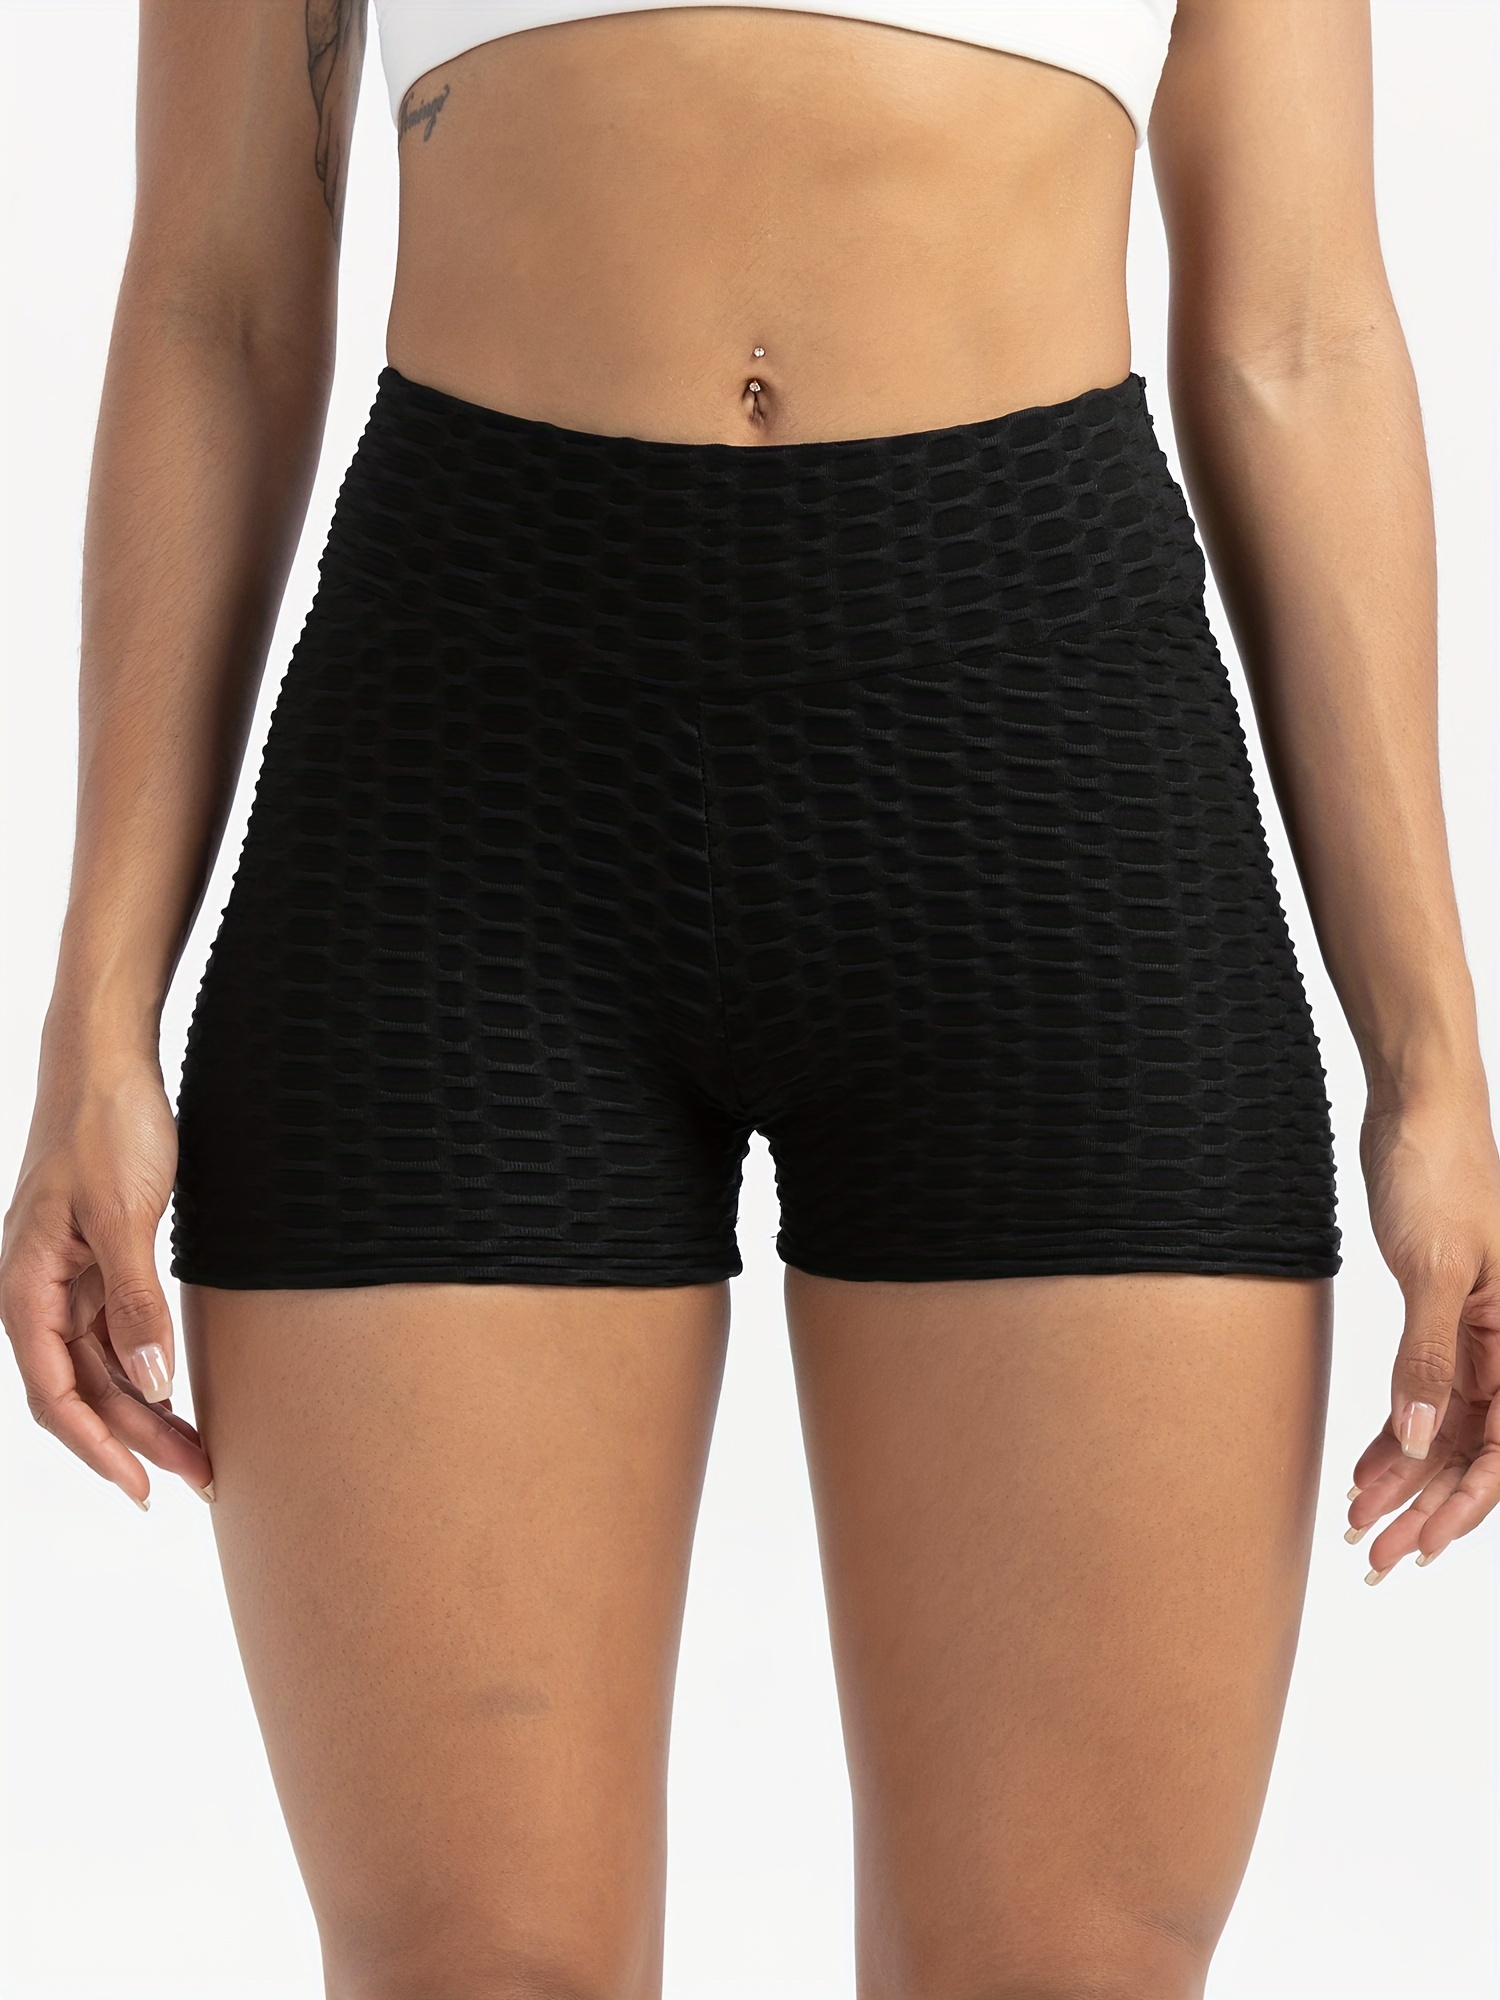 Skinny Biker Shorts, Pocket Casual Short Leggings For Summer & Spring,  Women's Clothing